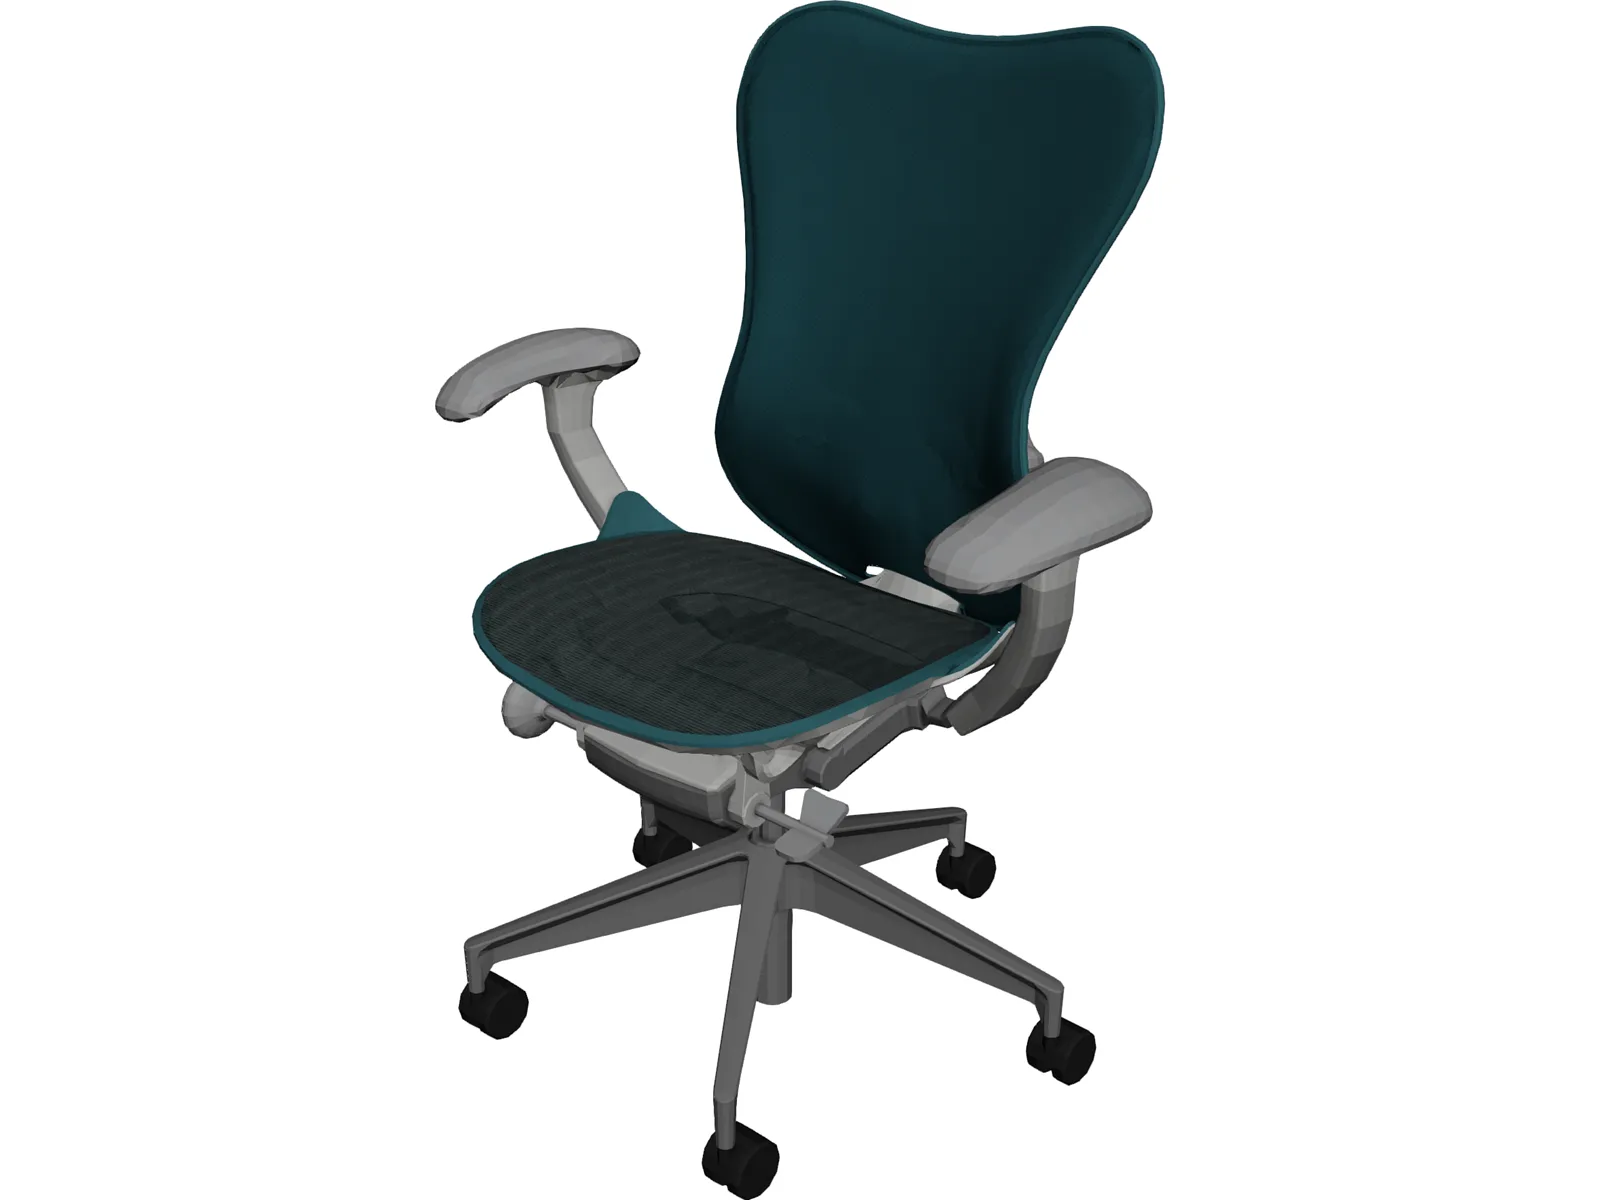 Mirra Chair 3D Model